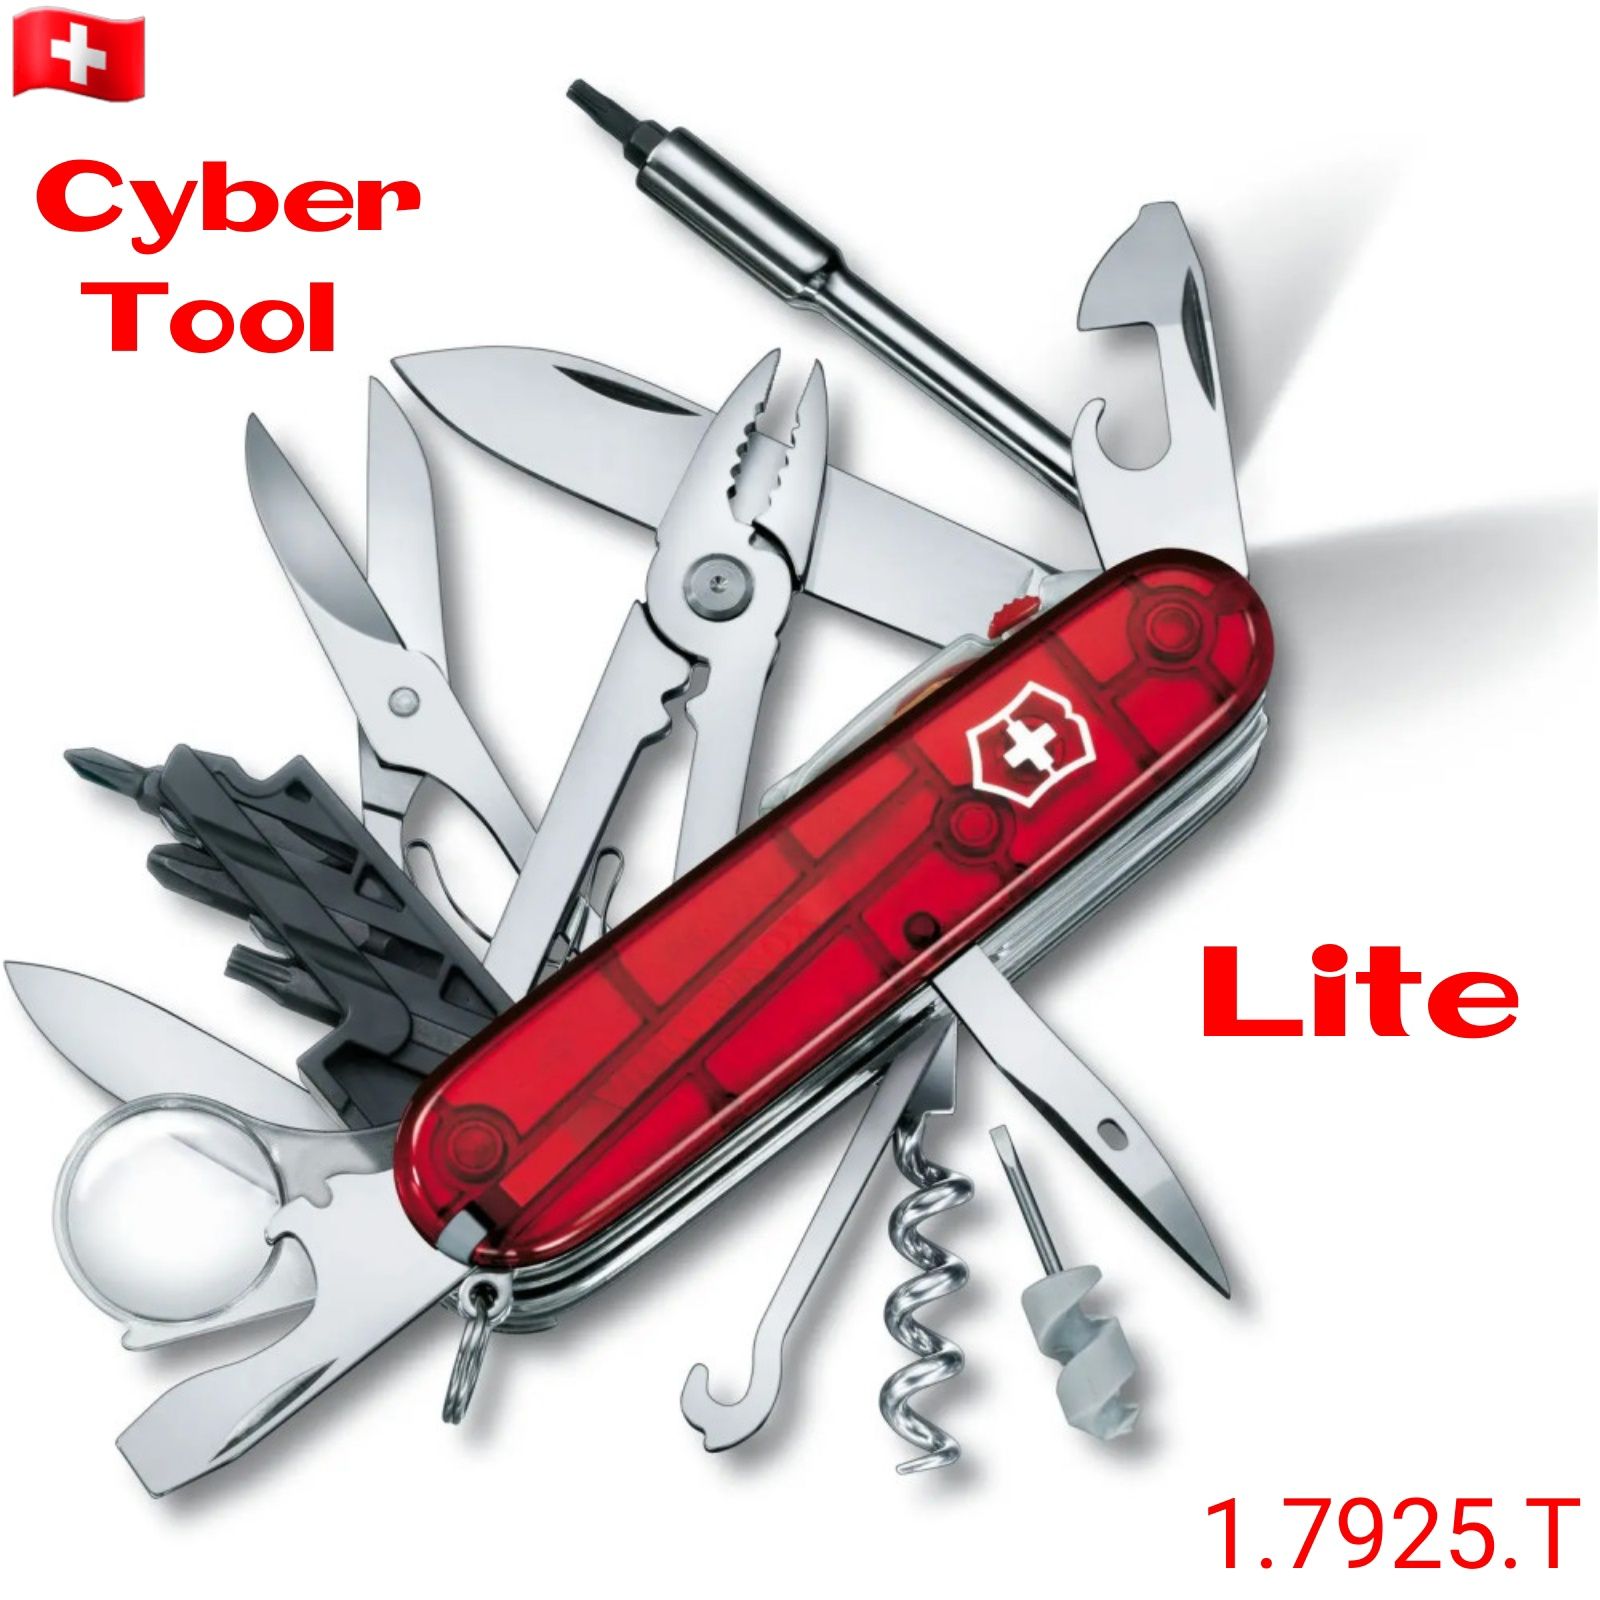 Ніж Victorinox Нож CyberTool 29, 34, 41, Lite Cyber Сайбер Кібер